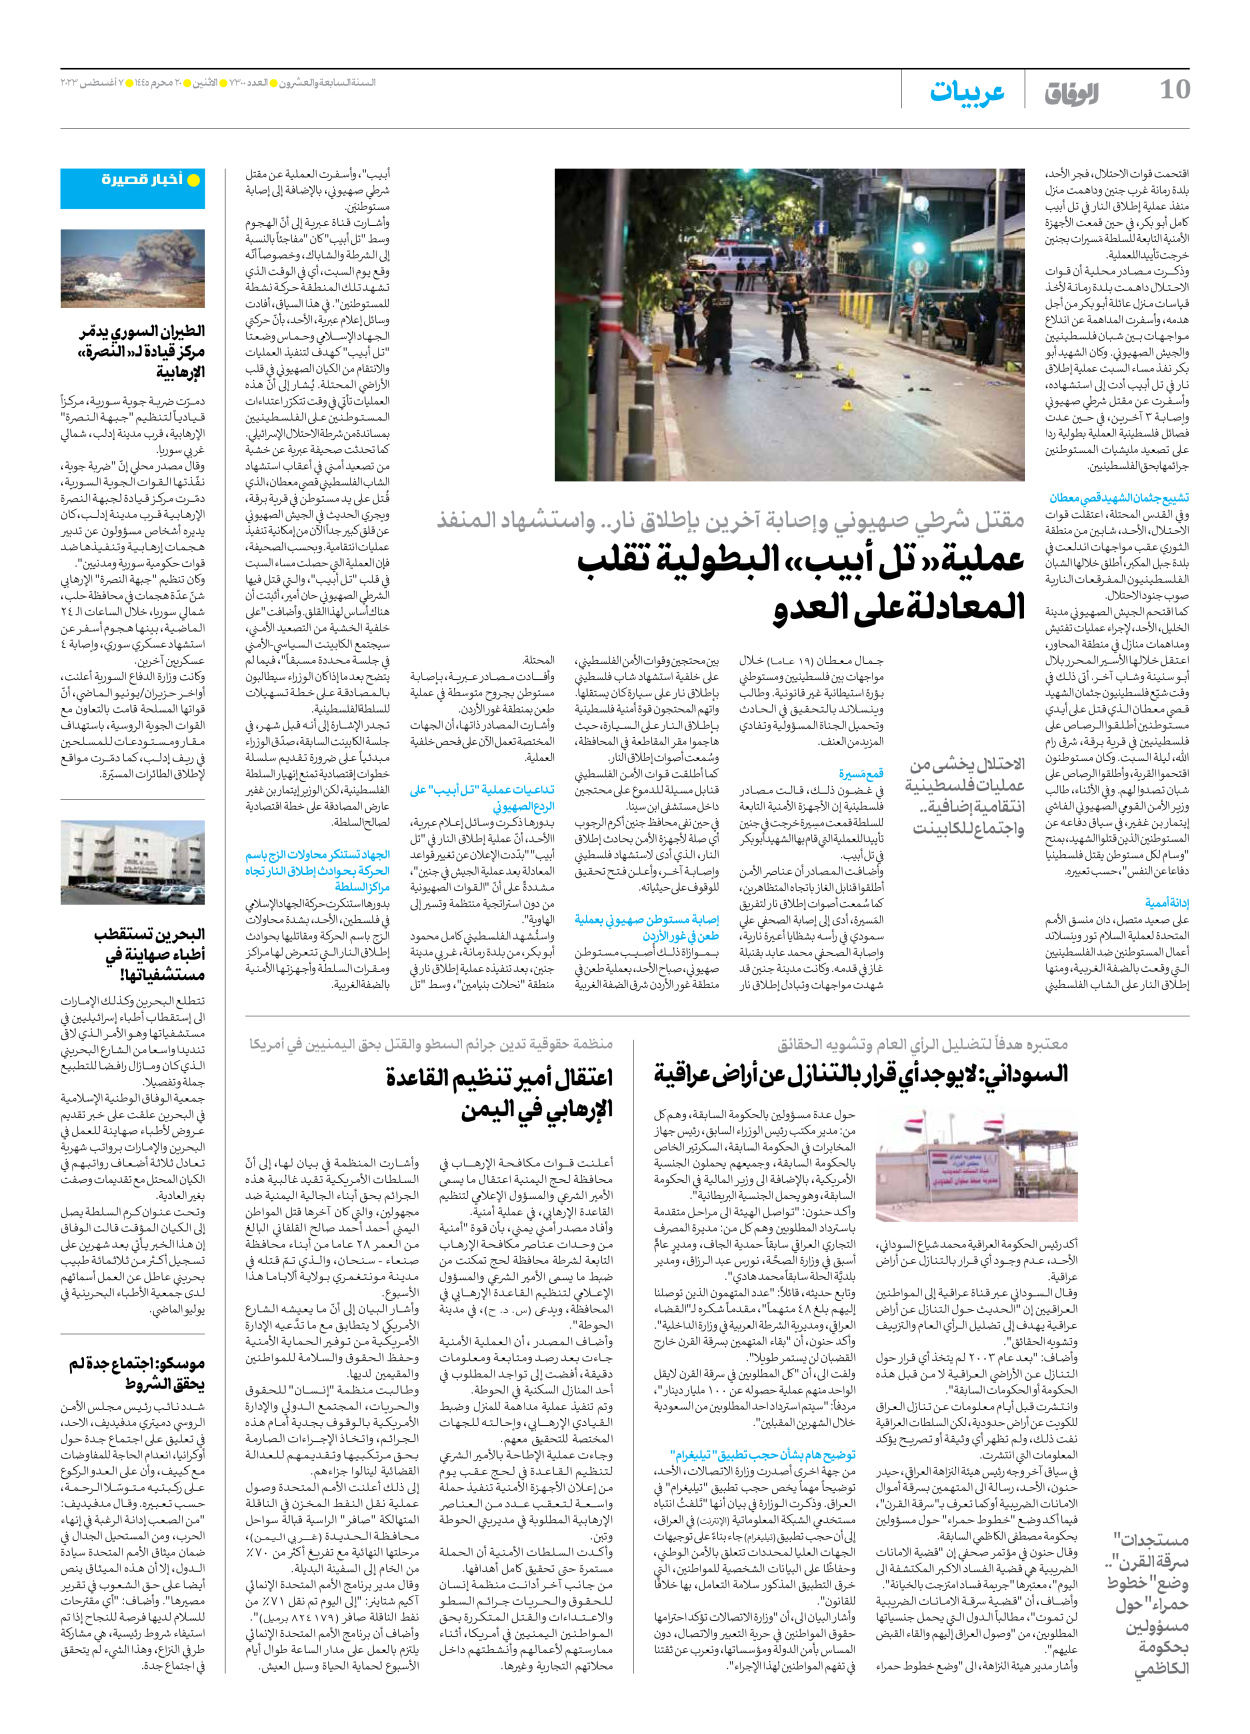 صحیفة ایران الدولیة الوفاق - العدد سبعة آلاف وثلاثمائة - ٠٧ أغسطس ٢٠٢٣ - الصفحة ۱۰